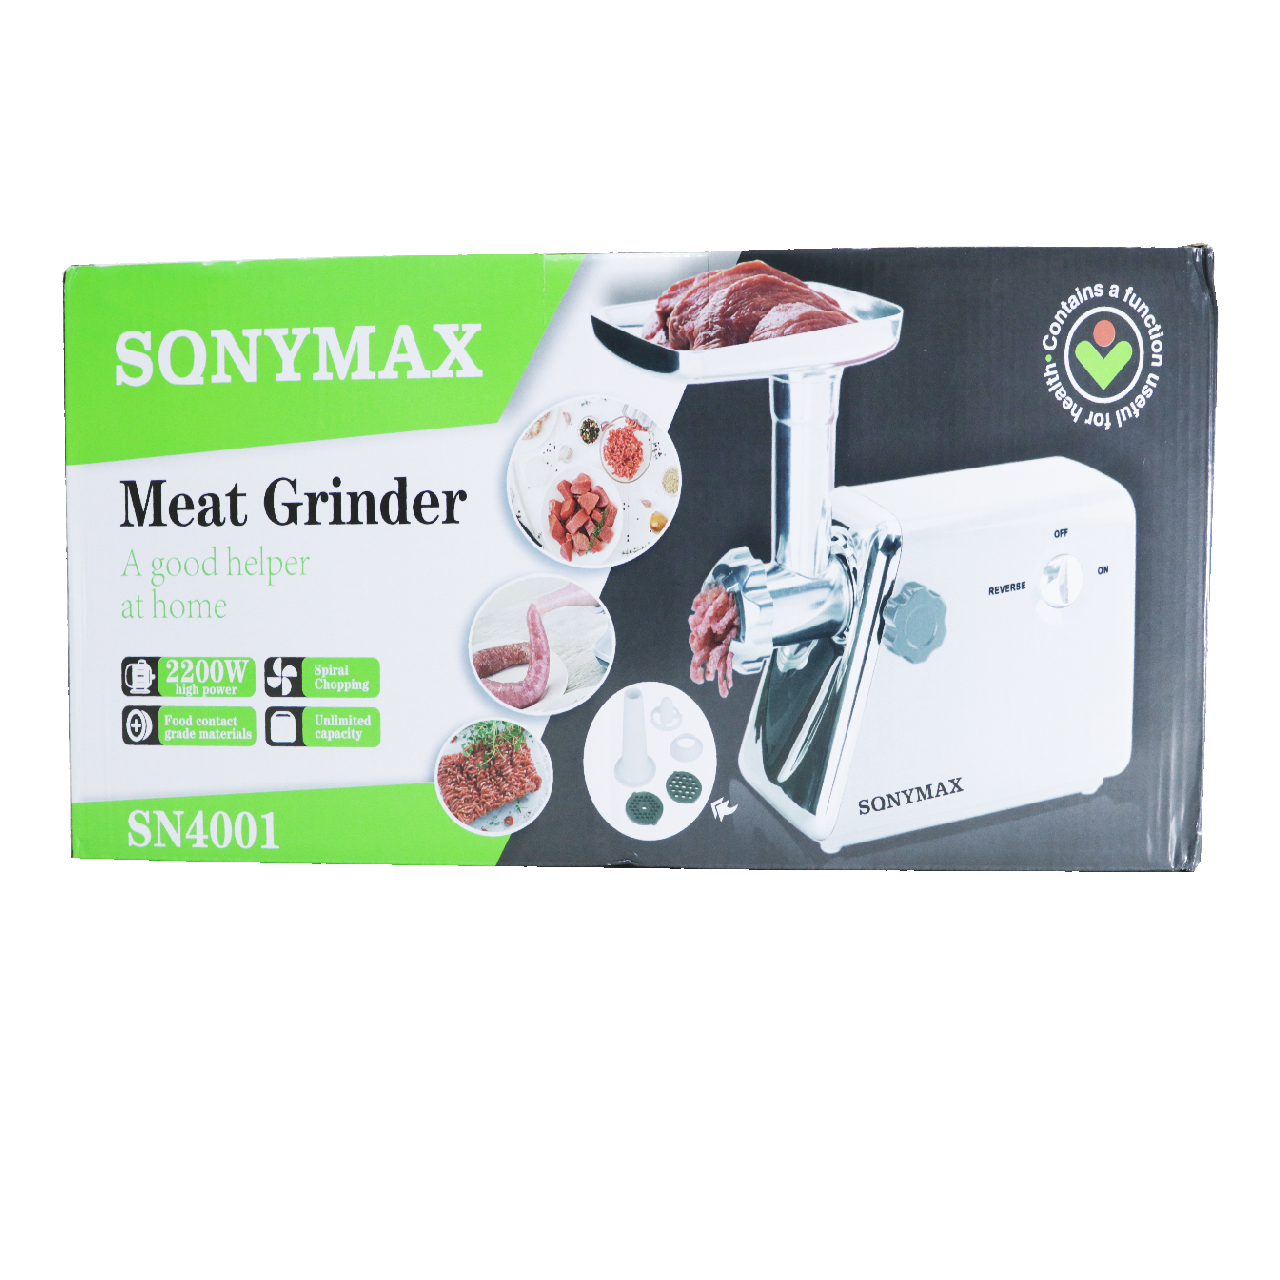 SonyMax M210825-307 Meat Grinder, 220V